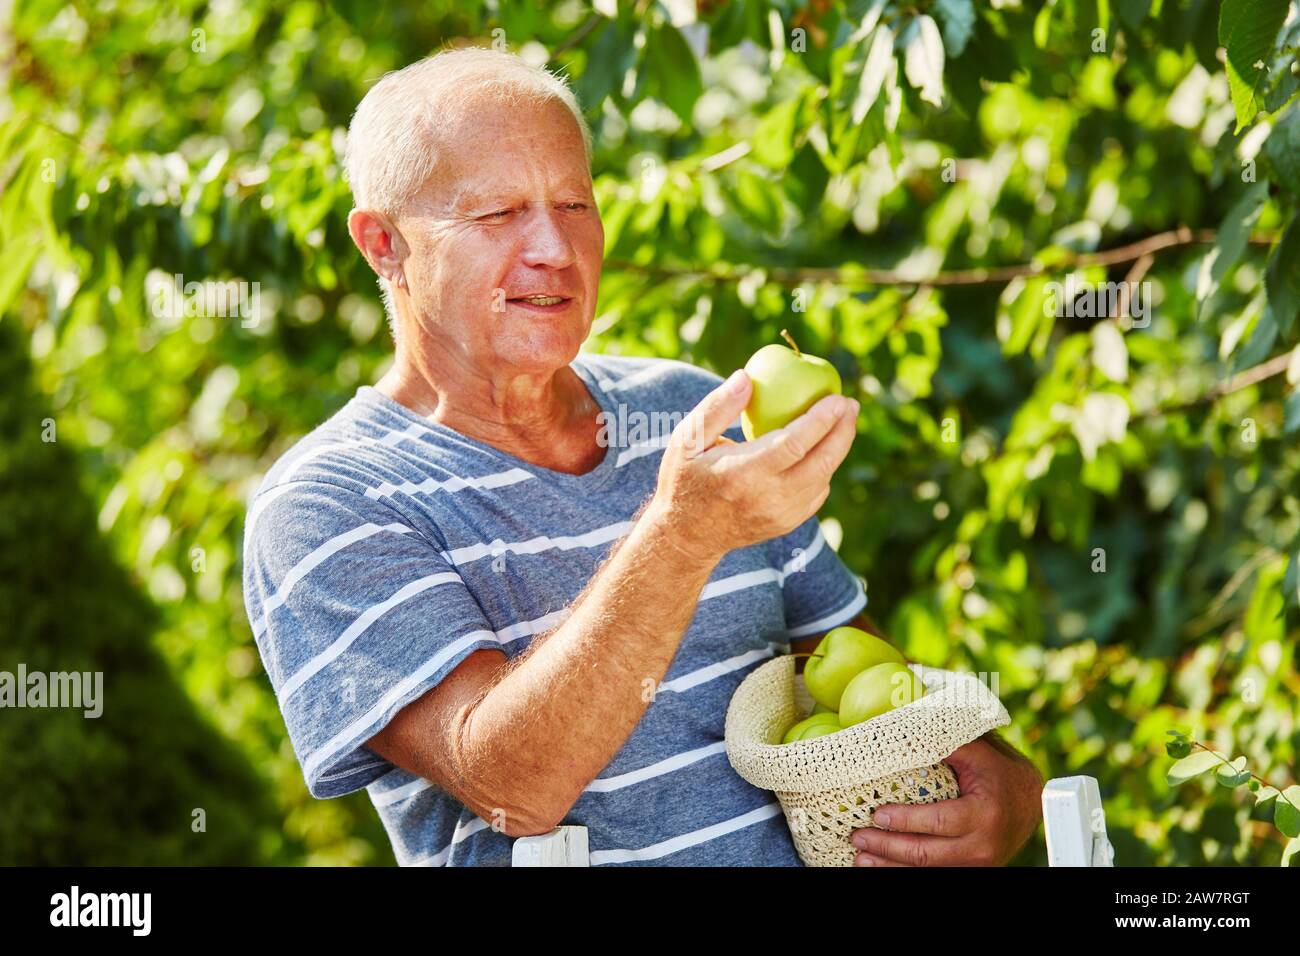 Der alte Mann erntet grüne Äpfel von einem apfelbaum Stockfoto